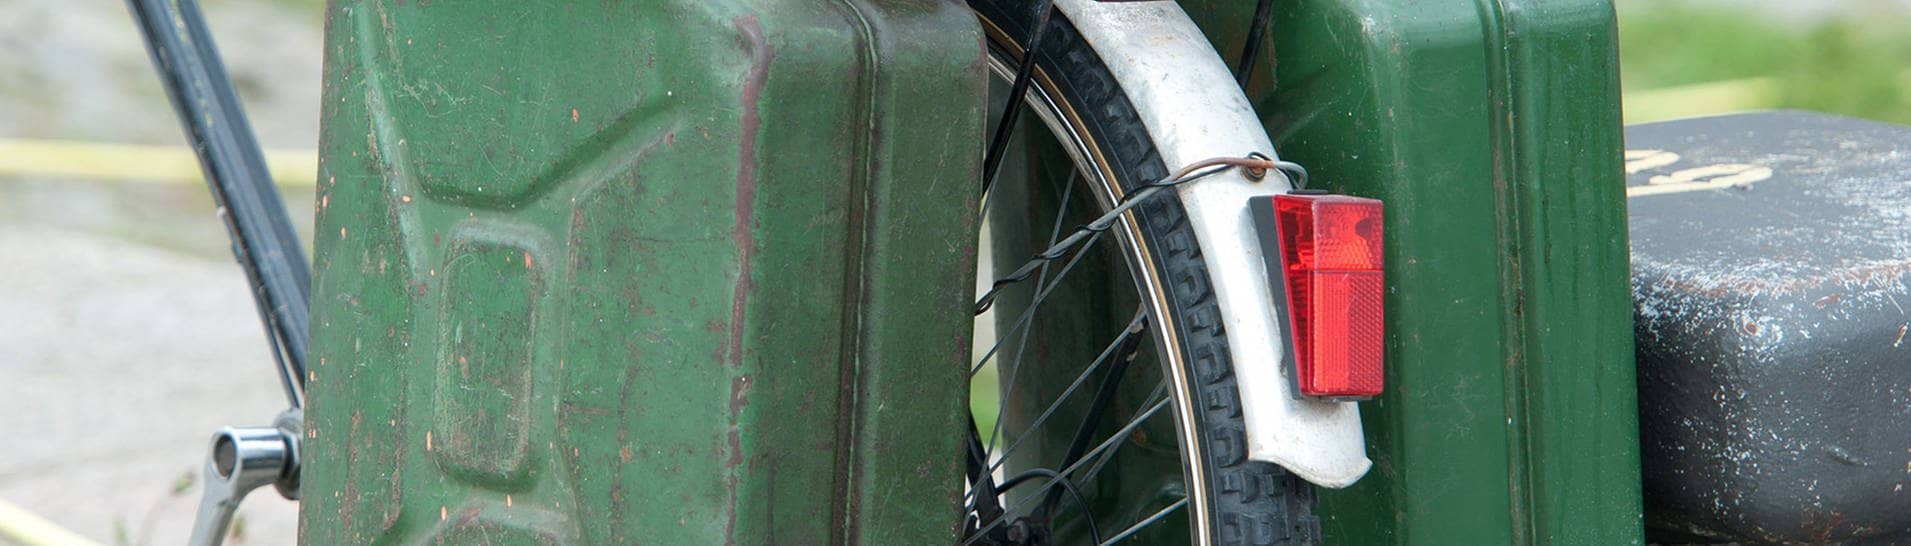 Zwei grüne Benzinkanister, die an einem Fahrradgepäckträger hängen.